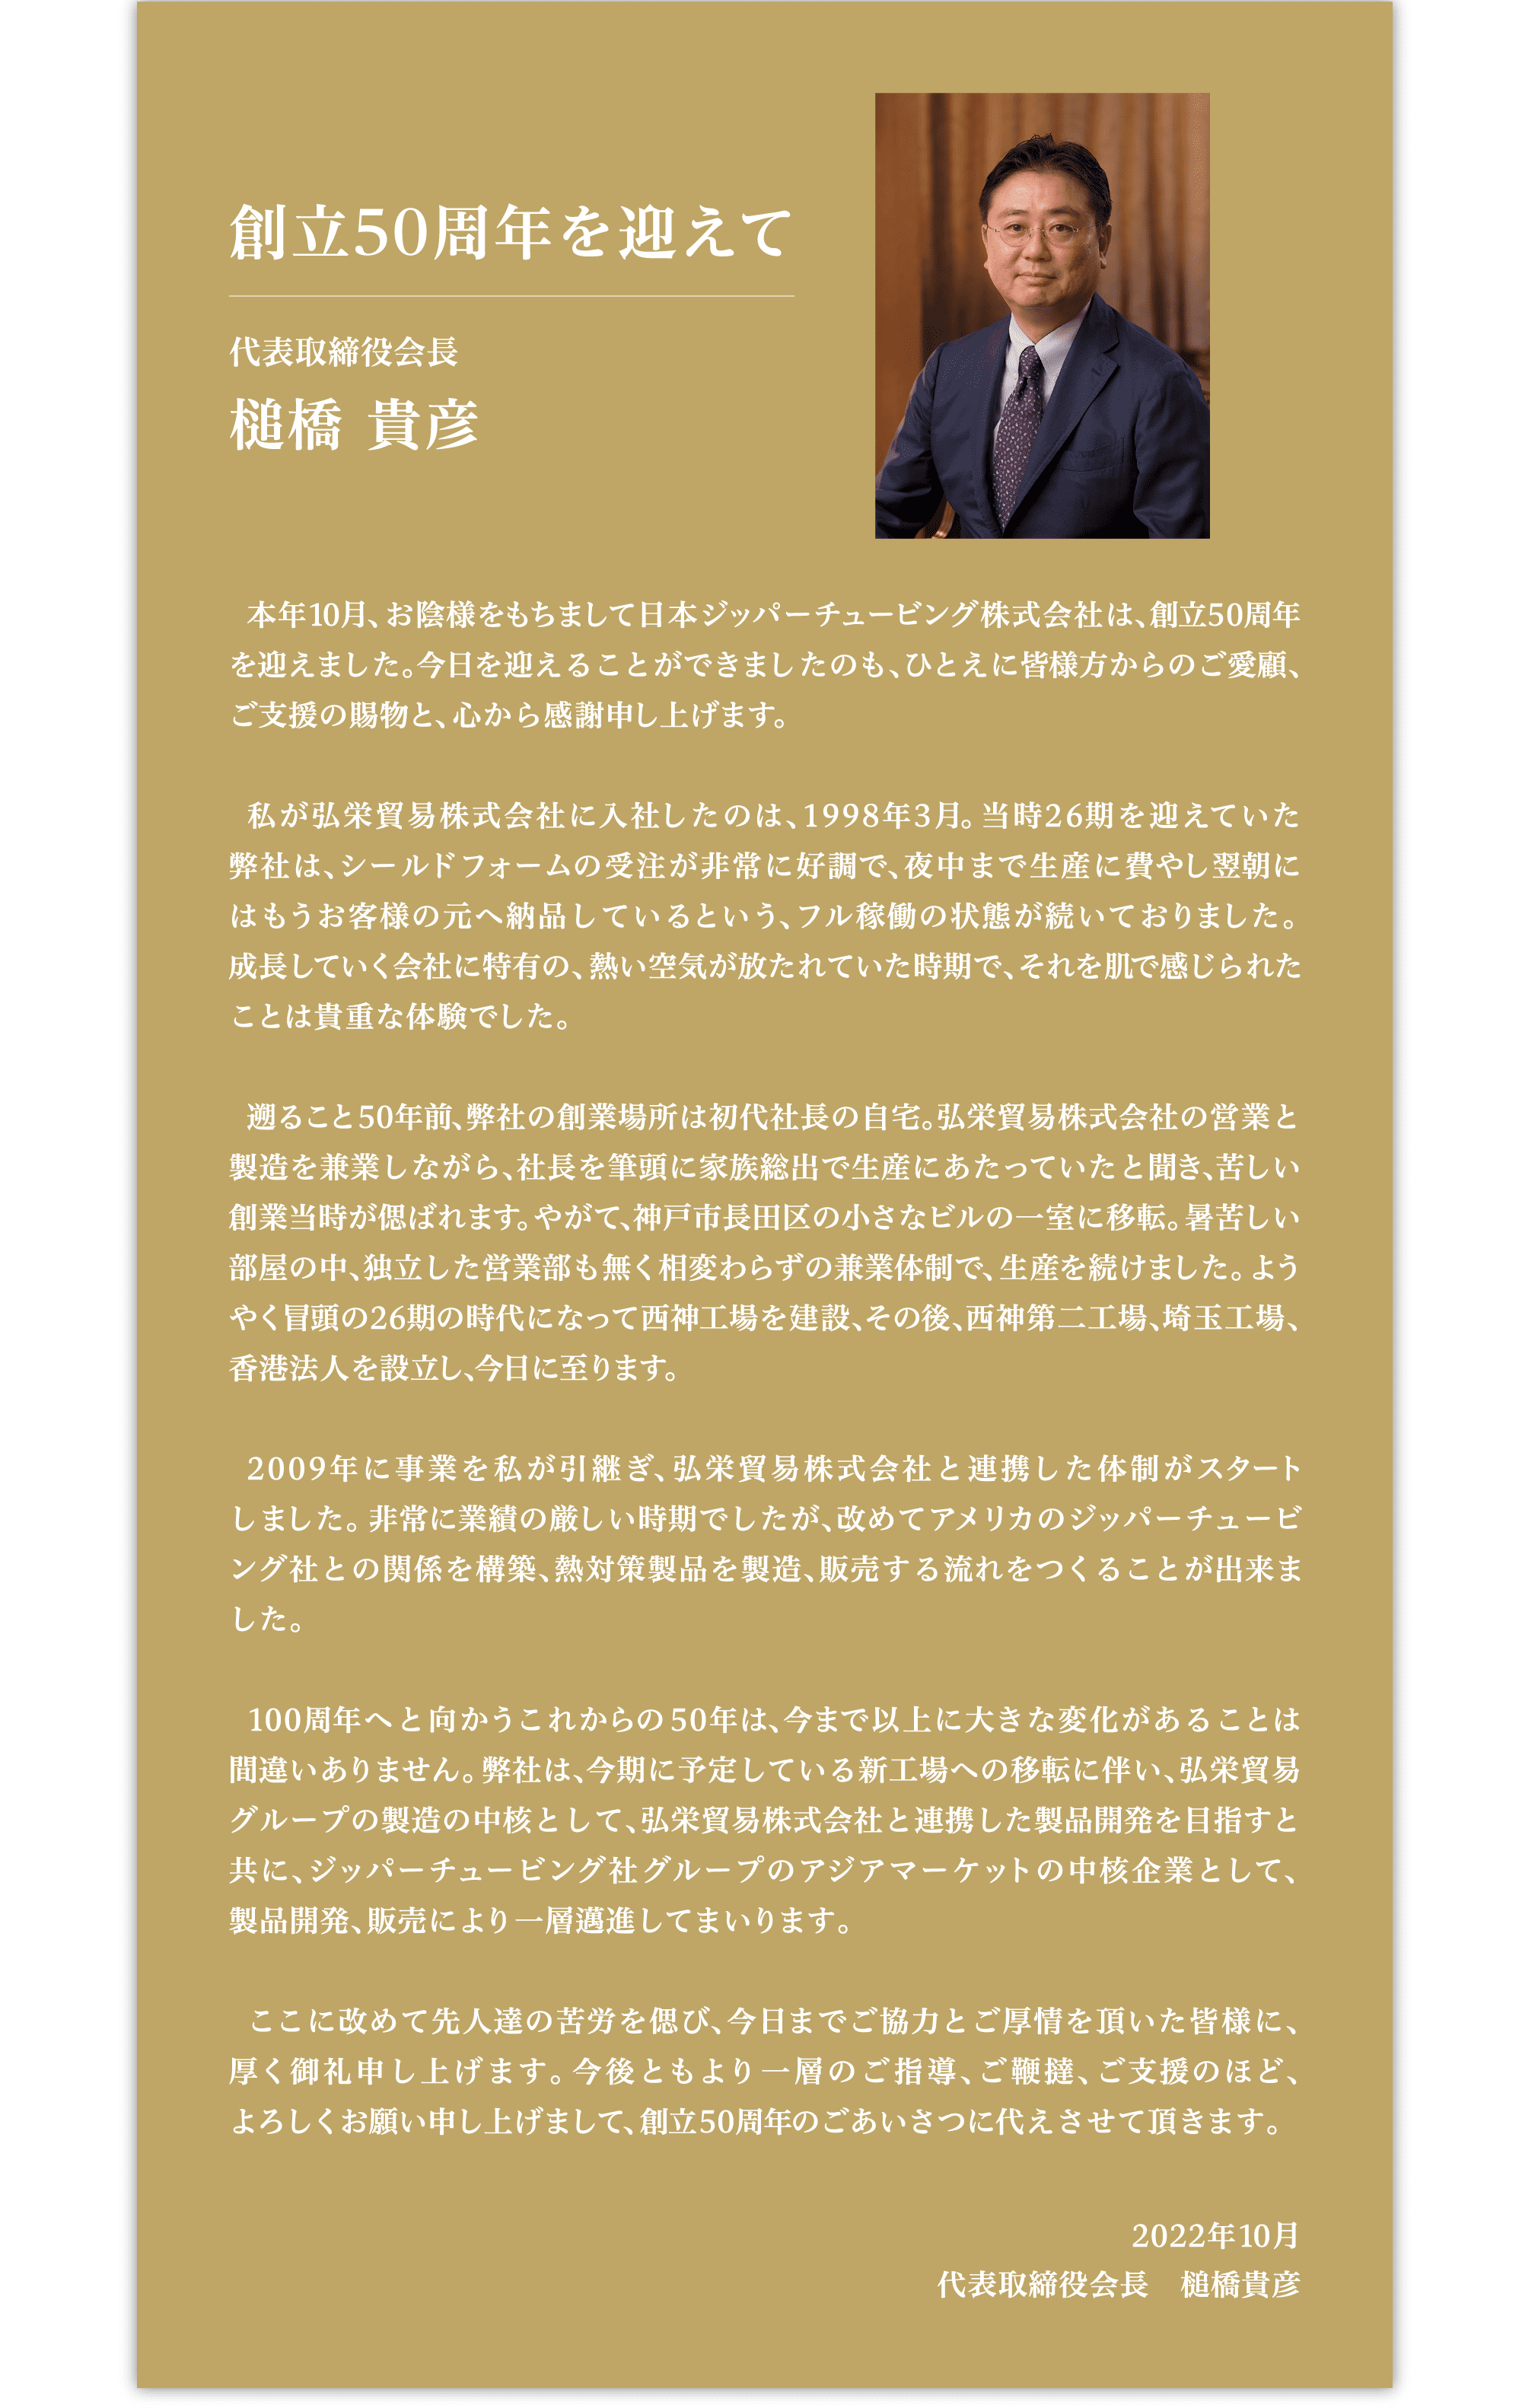 創立50周年を迎えて 代表取締役会長 槌橋 貴彦 本年10月、お陰様をもちまして日本ジッパーチュービング株式会社は、創立50周年を迎えました。今日を迎えることができましたのも、ひとえに皆様方からのご愛顧、ご支援の賜物と、心から感謝申し上げます。私が弘栄貿易株式会社に入社したのは、1998年3月。当時26期を迎えていた弊社は、シールドフォームの受注が非常に好調で、夜中まで生産に費やし翌朝にはもうお客様の元へ納品しているという、フル稼働の状態が続いておりました。成長していく会社に特集の、熱い空気が放たれていた時期で、それを肌で感じられたことは貴重な体験でした。遡ること50年前、弊社の創業場所は初代社長の自宅。弘栄貿易株式会社の営業と製造を兼業しながら、社長を筆頭に家族総出で生産にあたっていたと聞き、苦しい創業当時が偲ばれます。やがて、神戸市長田区の小さなビルの一室に移転。暑苦しい部屋の中、独立した営業部も無く相変わらずの兼業体制で、生産を続けました。ようやく冒頭の26期の時代になって西神工場を建設、その後、西神第二工場、埼玉工場、香港法人を設立し、今日に至ります。2009年に事業を私が引継ぎ、弘栄貿易株式会社と連携した体制がスタートしました。非常に業績の厳しい時期でしたが、改めてアメリカのジッパーチュービング社との関係を構築、熱対策製品を製造、販売する流れをつくることが出来ました。100周年へと向かうこれからの50年は、今まで以上に大きな変化があることは間違いありません。弊社は、今期に予定している新工場への移転に伴い、弘栄貿易グループの製造の中核として、弘栄貿易株式会社と連携した製品開発を目指すと共に、ジッパーチュービング社グループのアジアマーケットの中核企業として、製品開発、販売により一層邁進してまいります。ここに改めて先人達の苦労を偲び、今日までご協力とご厚情を頂いた皆様に、厚く御礼申し上げます。今後ともより一層のご指導、ご鞭撻、ご支援のほど、よろしくお願い申し上げまして、創立50周年のごあいさつに代えさせて頂きます。2022年10月 代表取締役会長 槌橋 貴彦